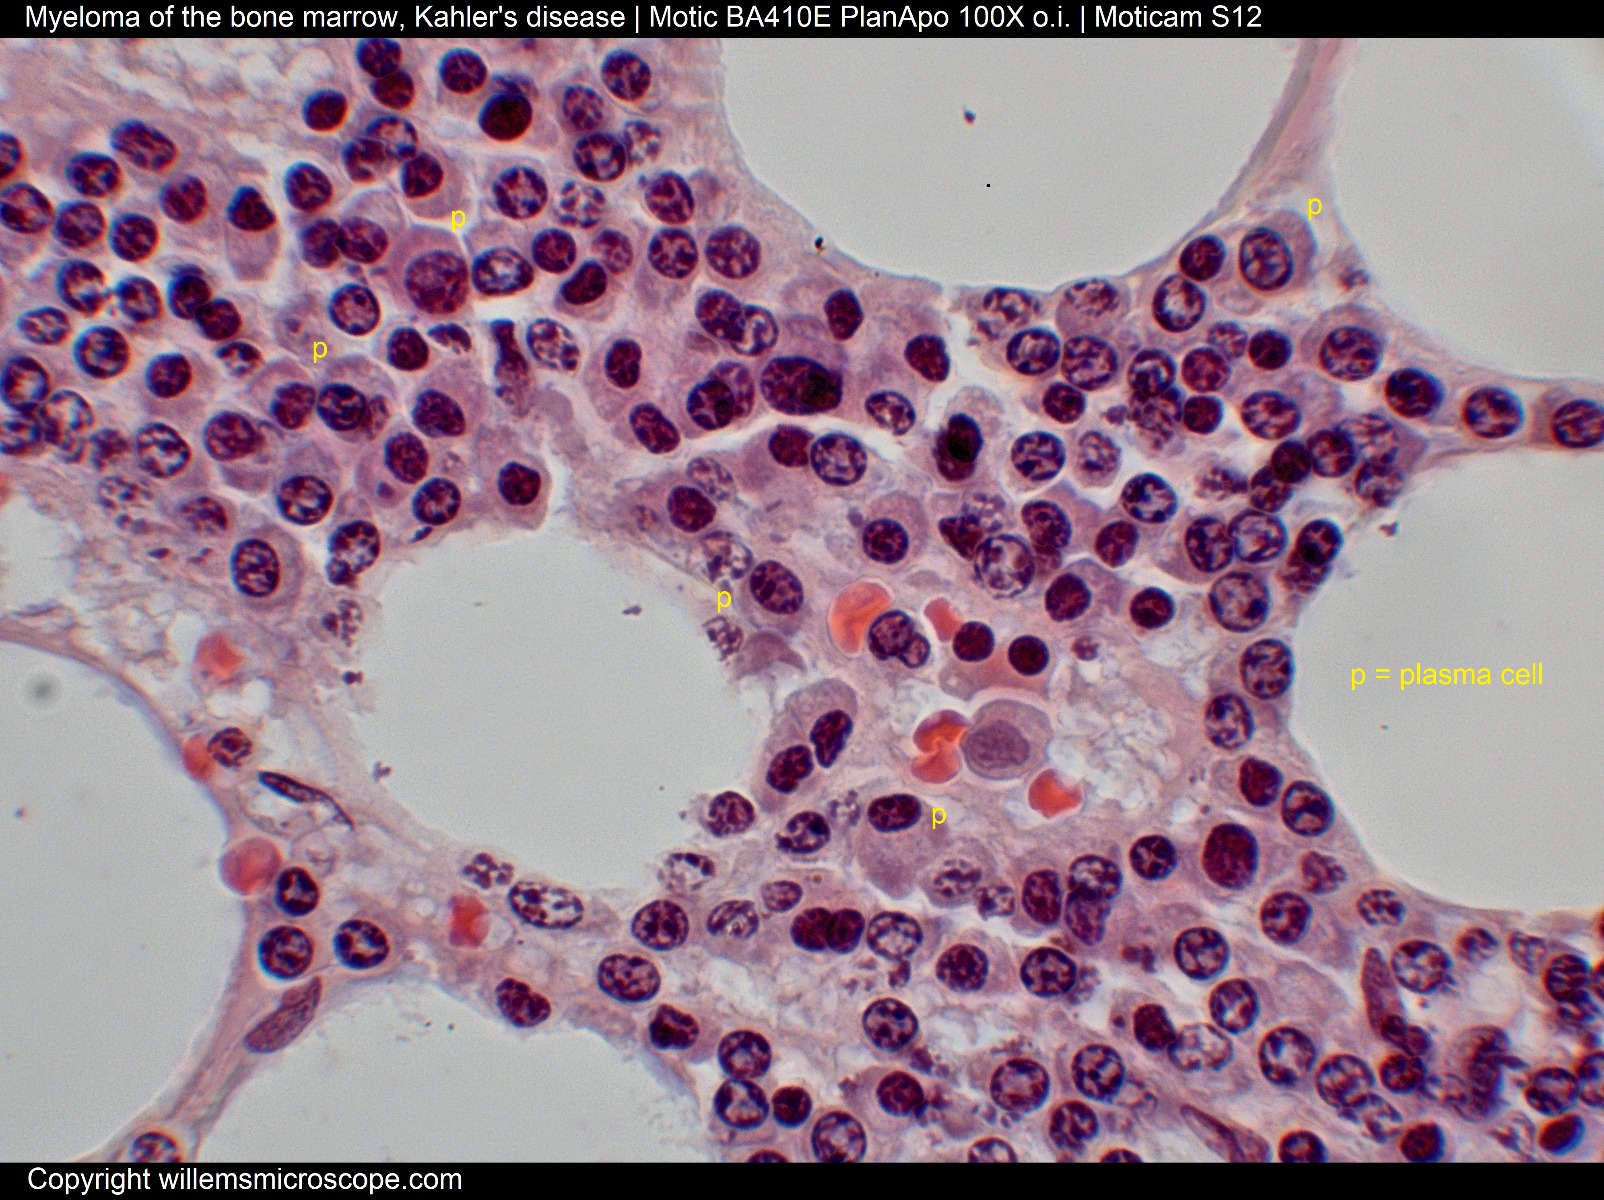 Myeloma of the bone marrow.